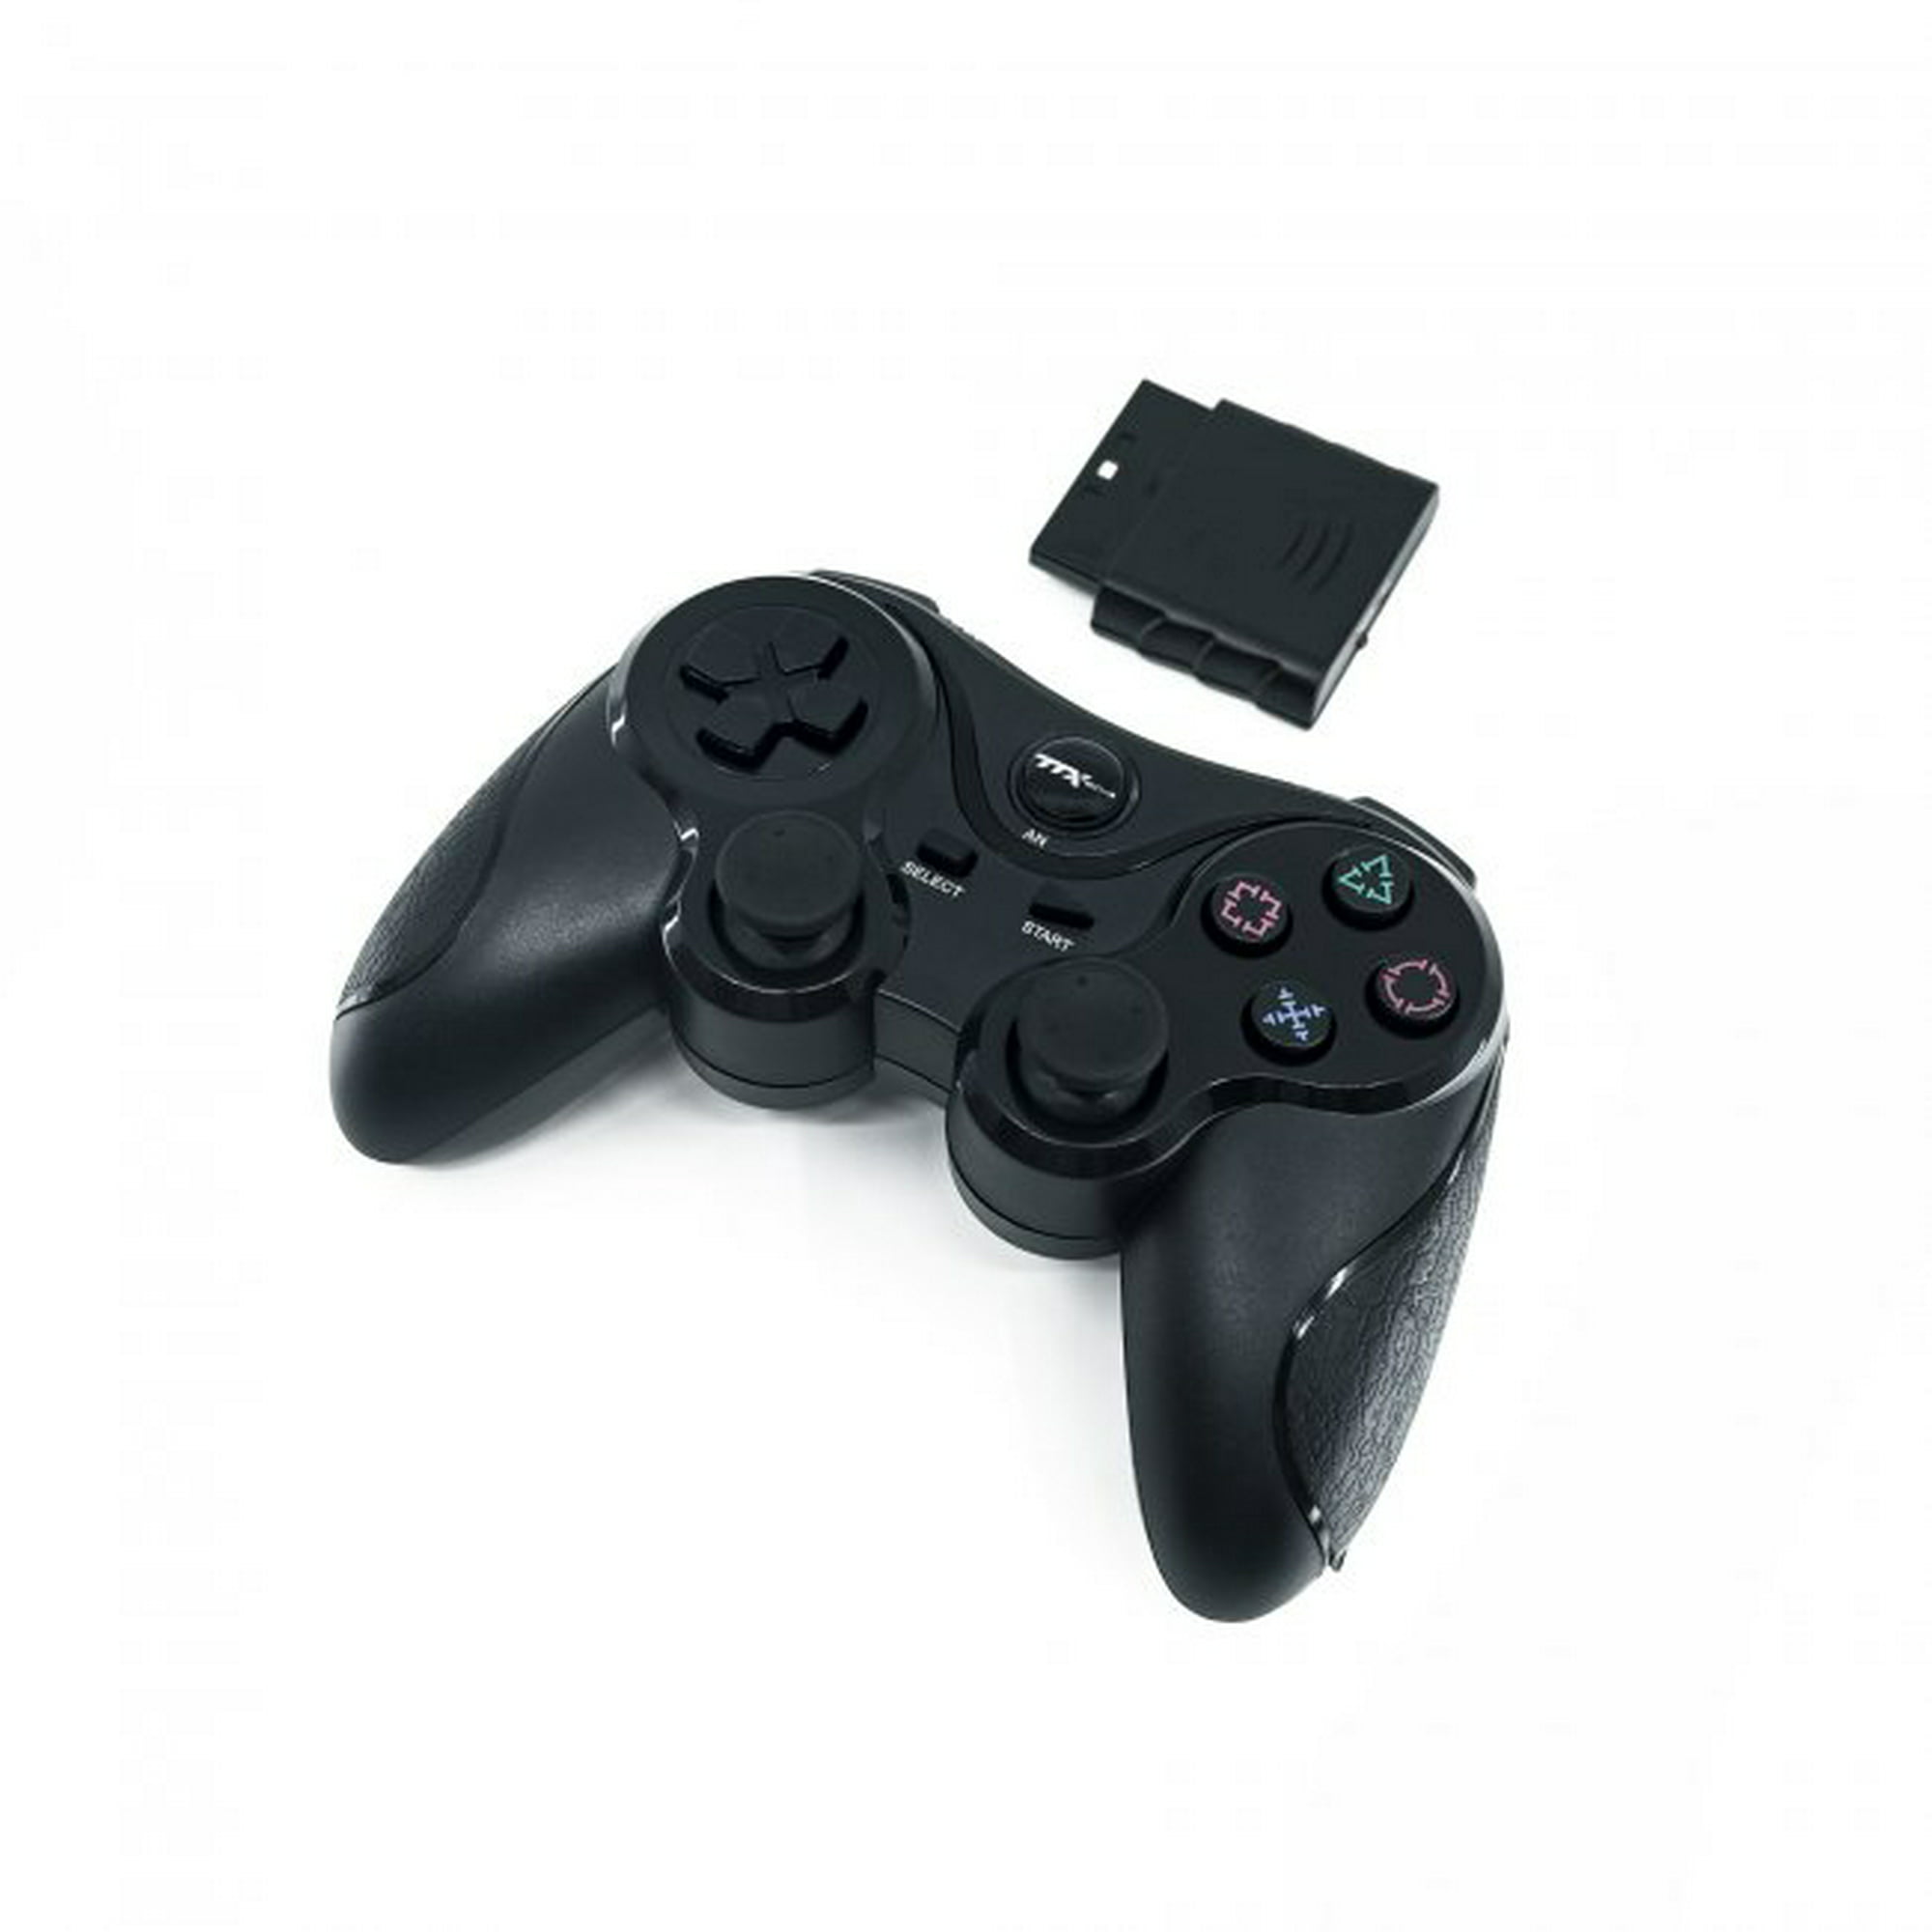 Palanca inalámbrica de 2 mandos Playstation 2 Ps2 Playstation 1 color negro